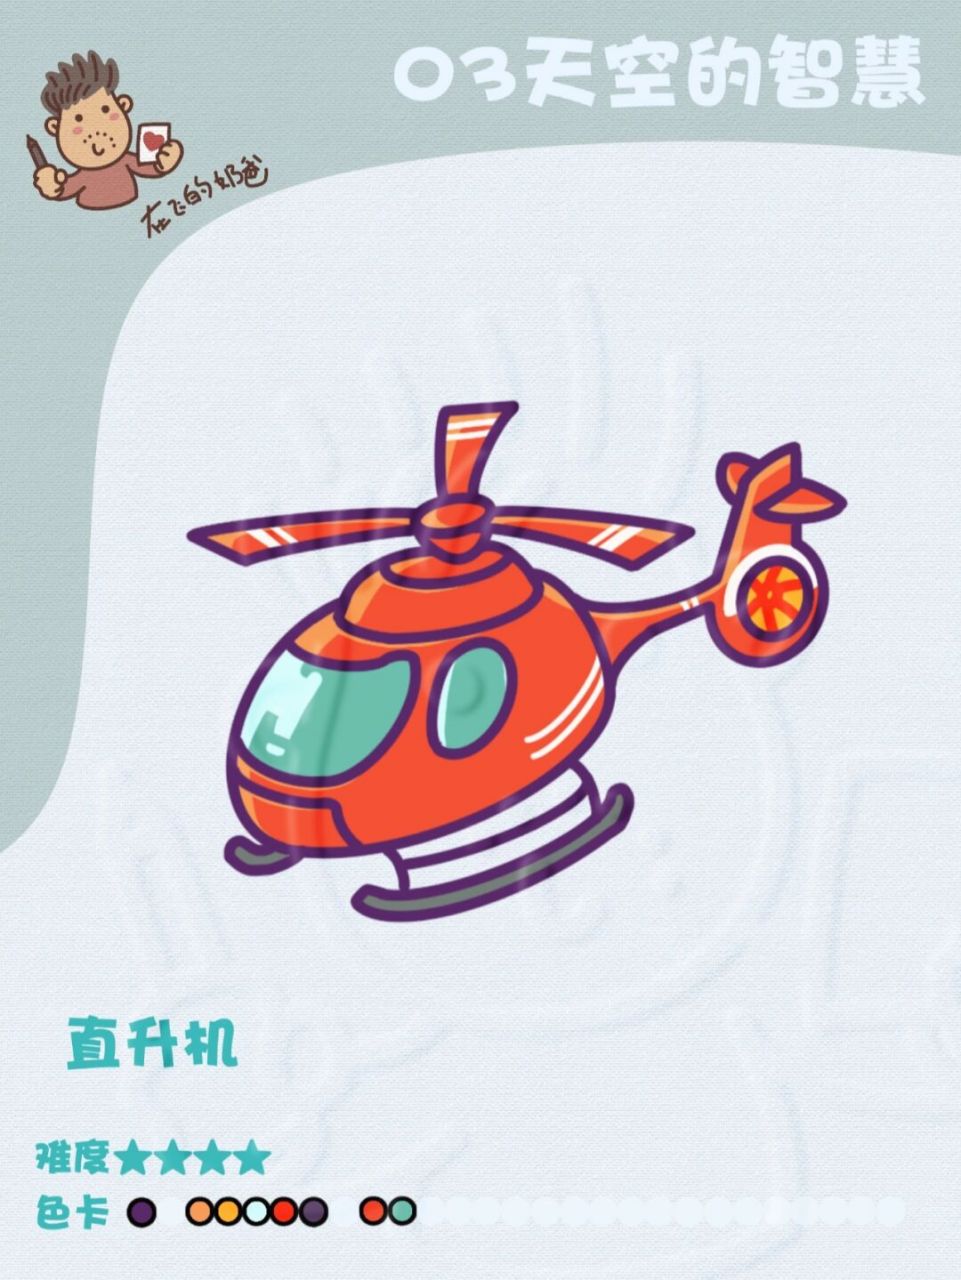 武装直升机简笔画彩色图片